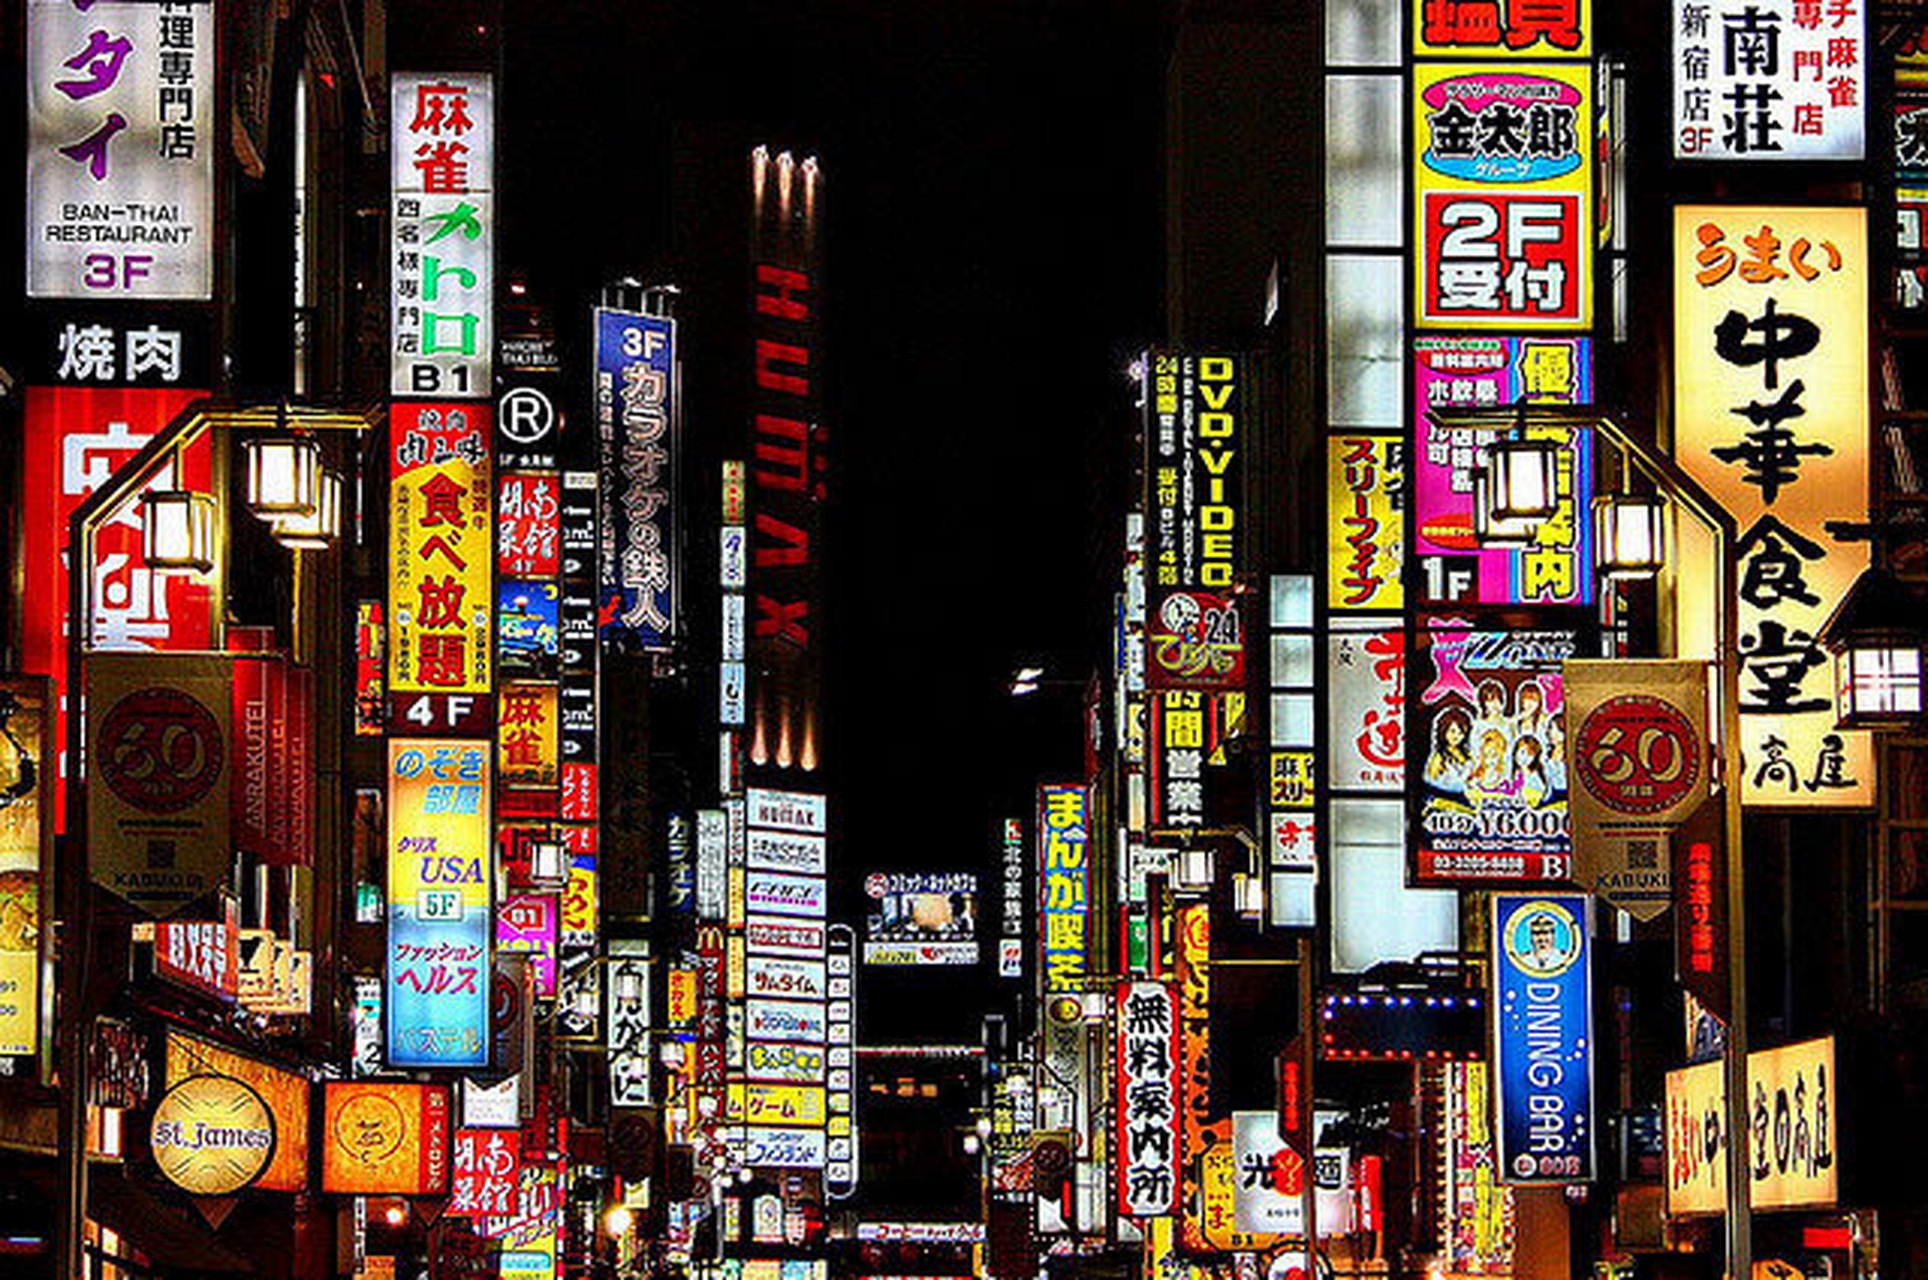 万物皆可云# #五一旅游攻略#日本东京都新宿大街:位于东京的中心